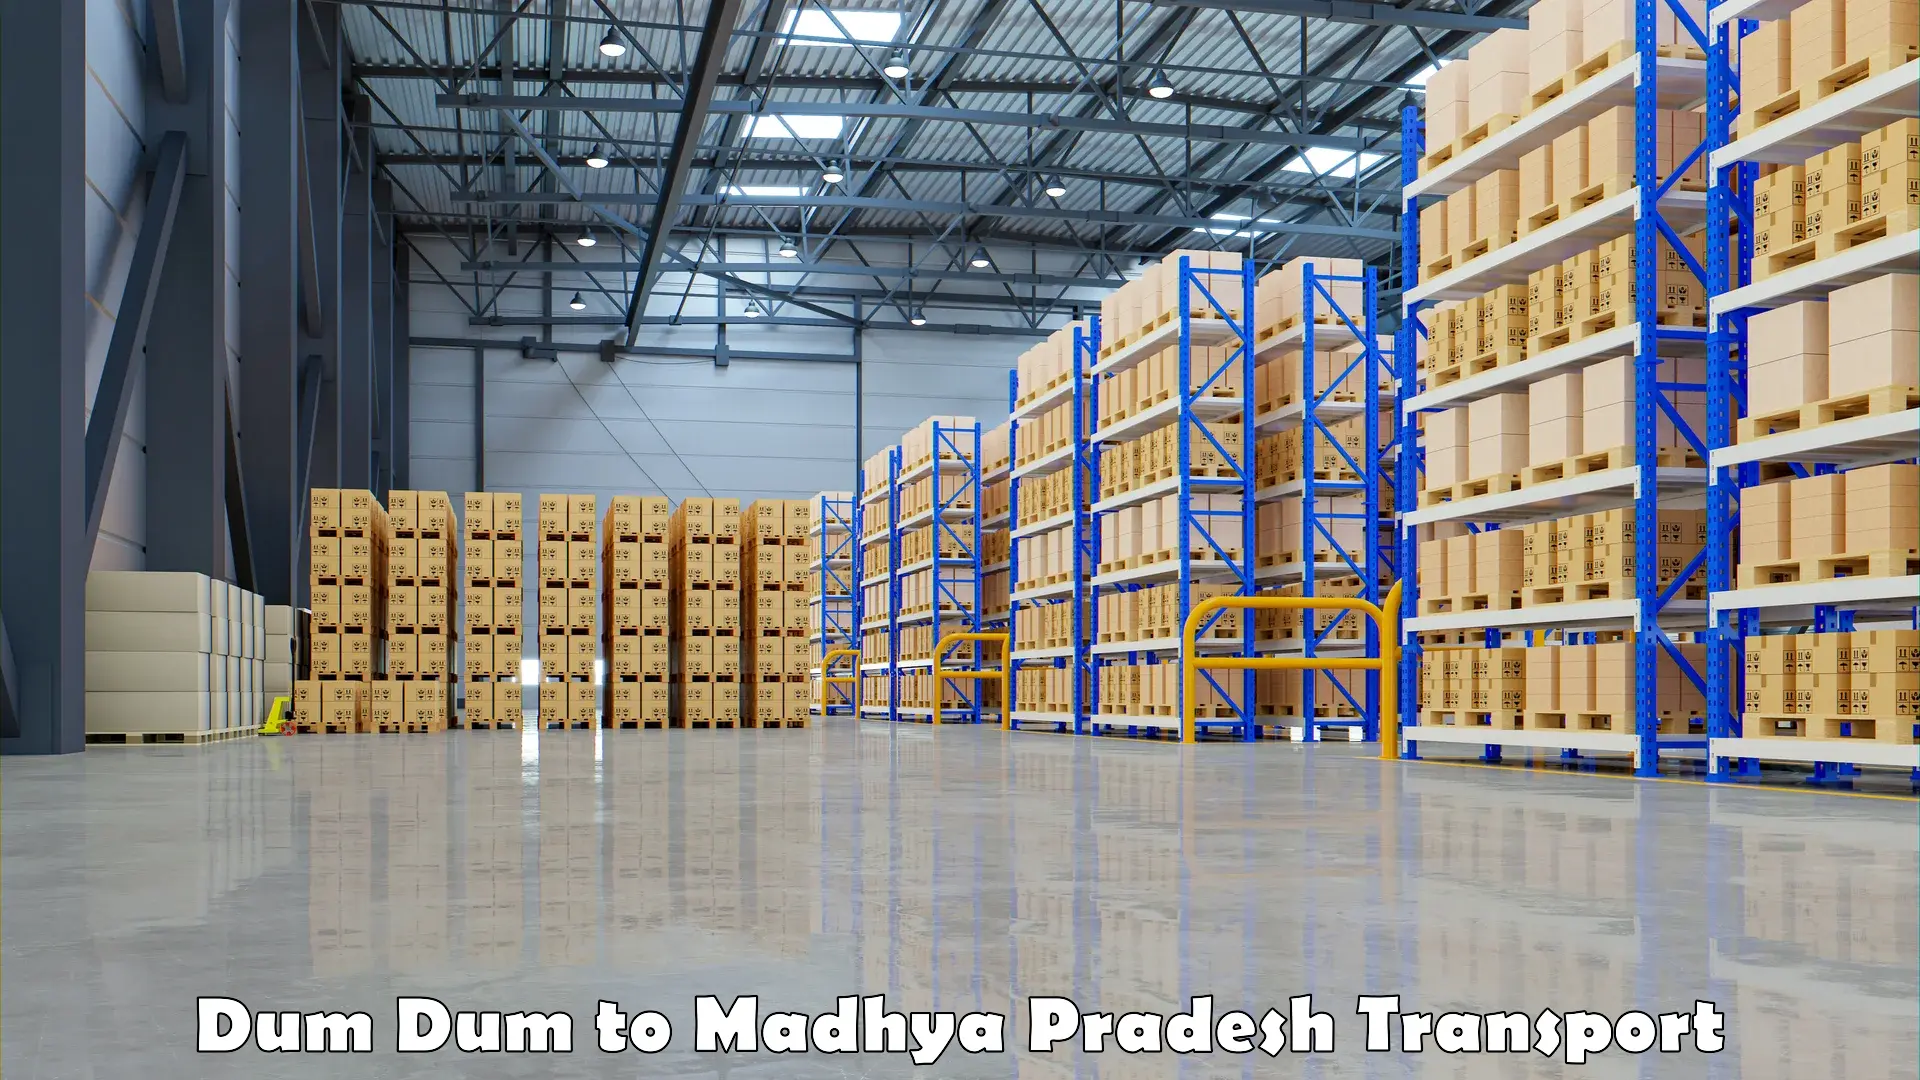 Truck transport companies in India Dum Dum to Garoth